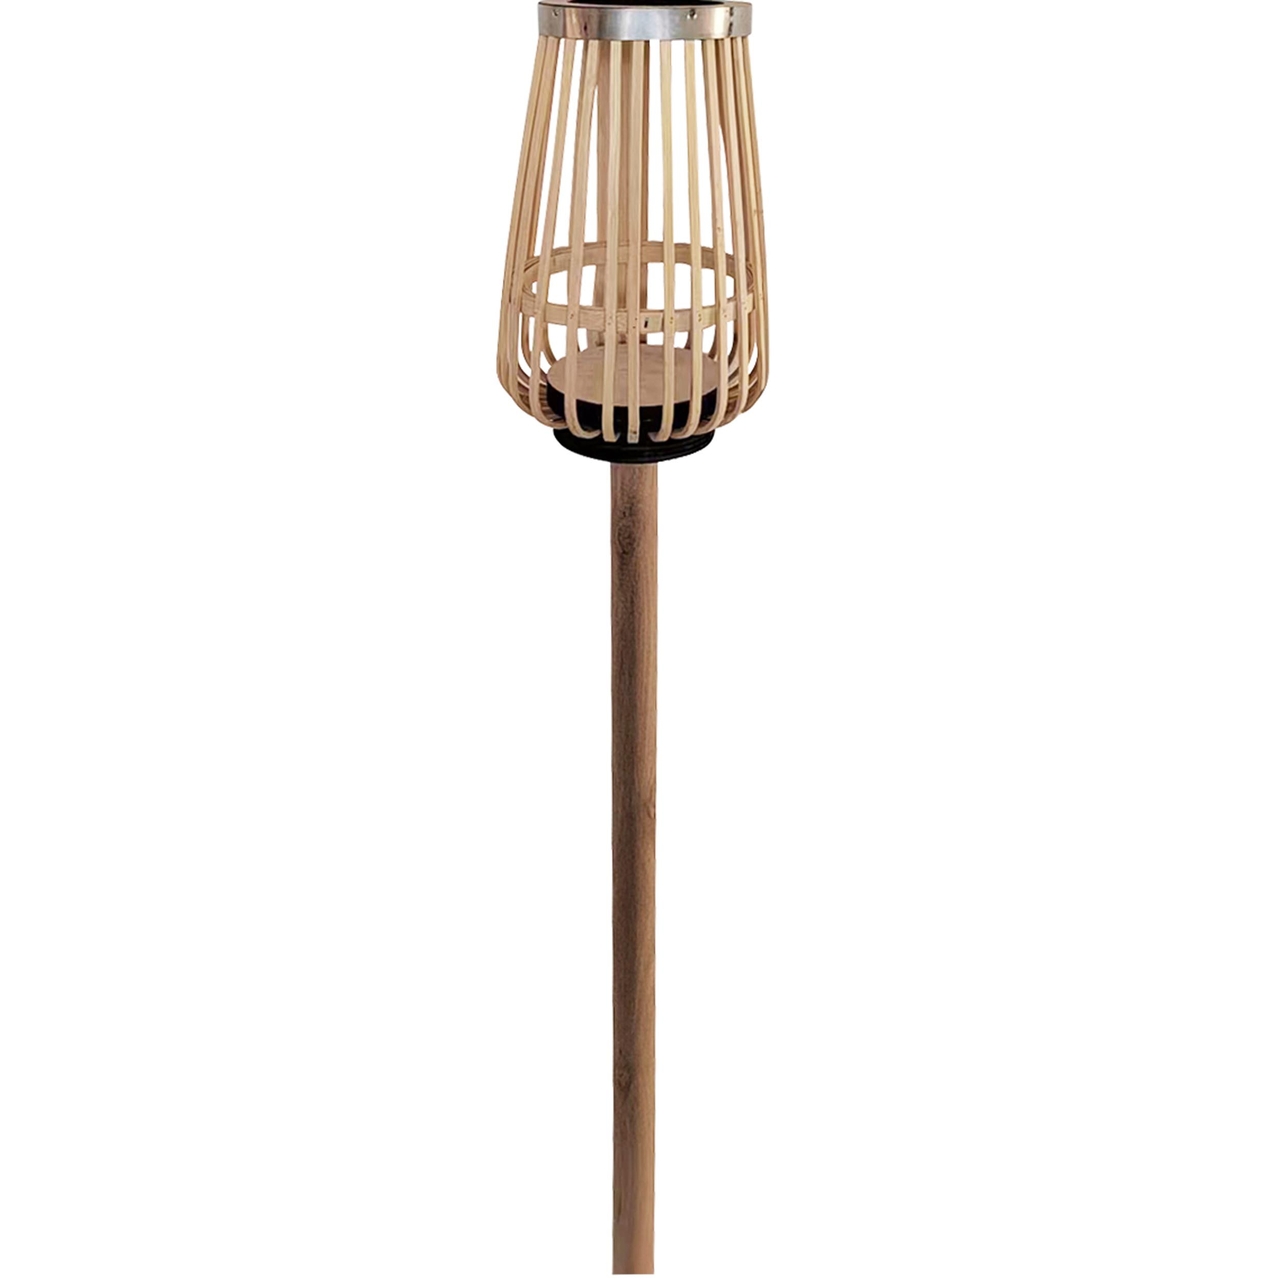 Dekoratief | Piquet m/lantaarn gelijnd, naturel, wilg/glas, 13x13x115cm | A235692